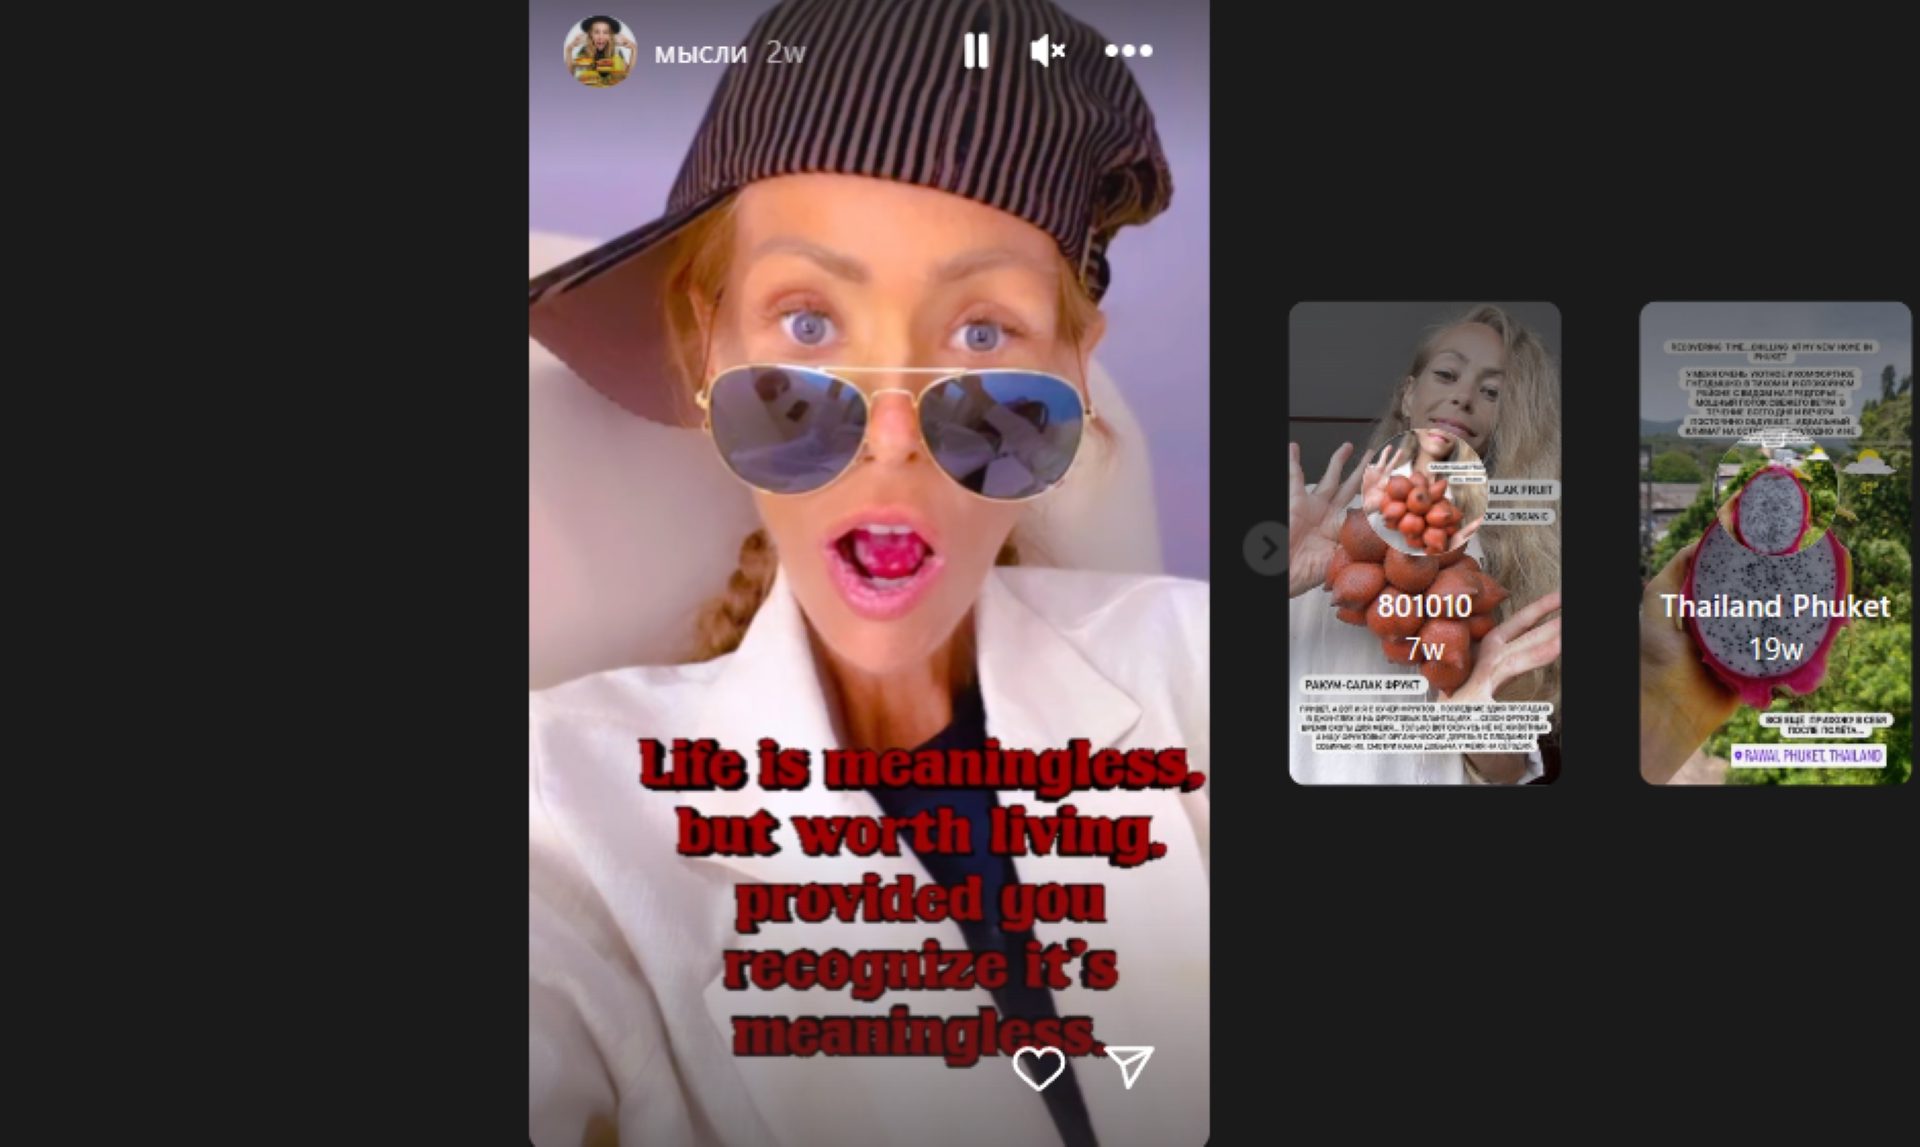 Her final Instagram post